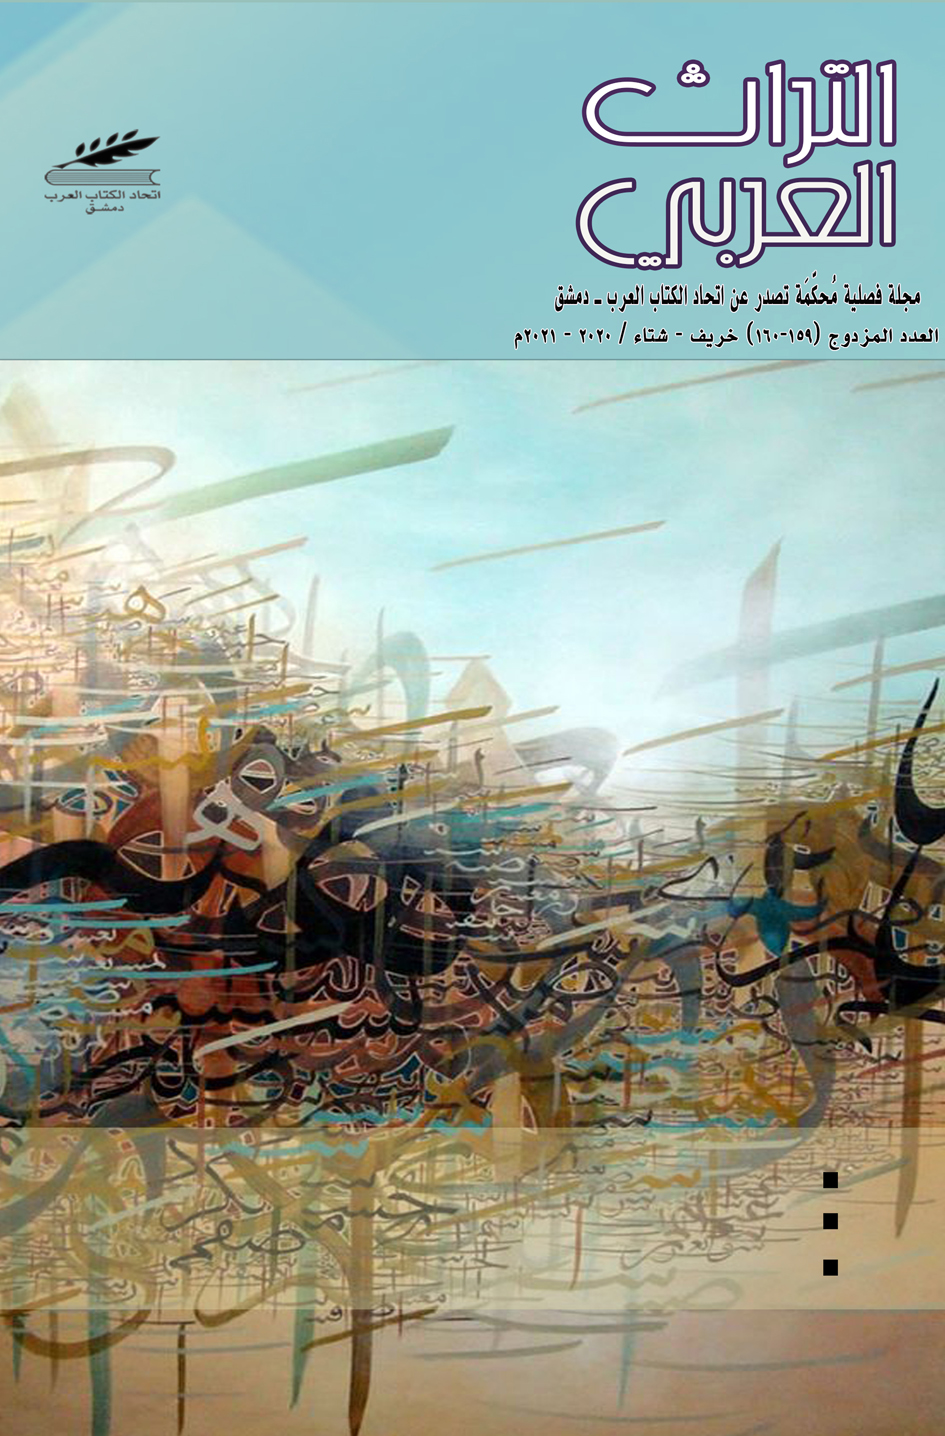 التراث العربي العدد 159-160 خريف-شتاء 2020-2021 م